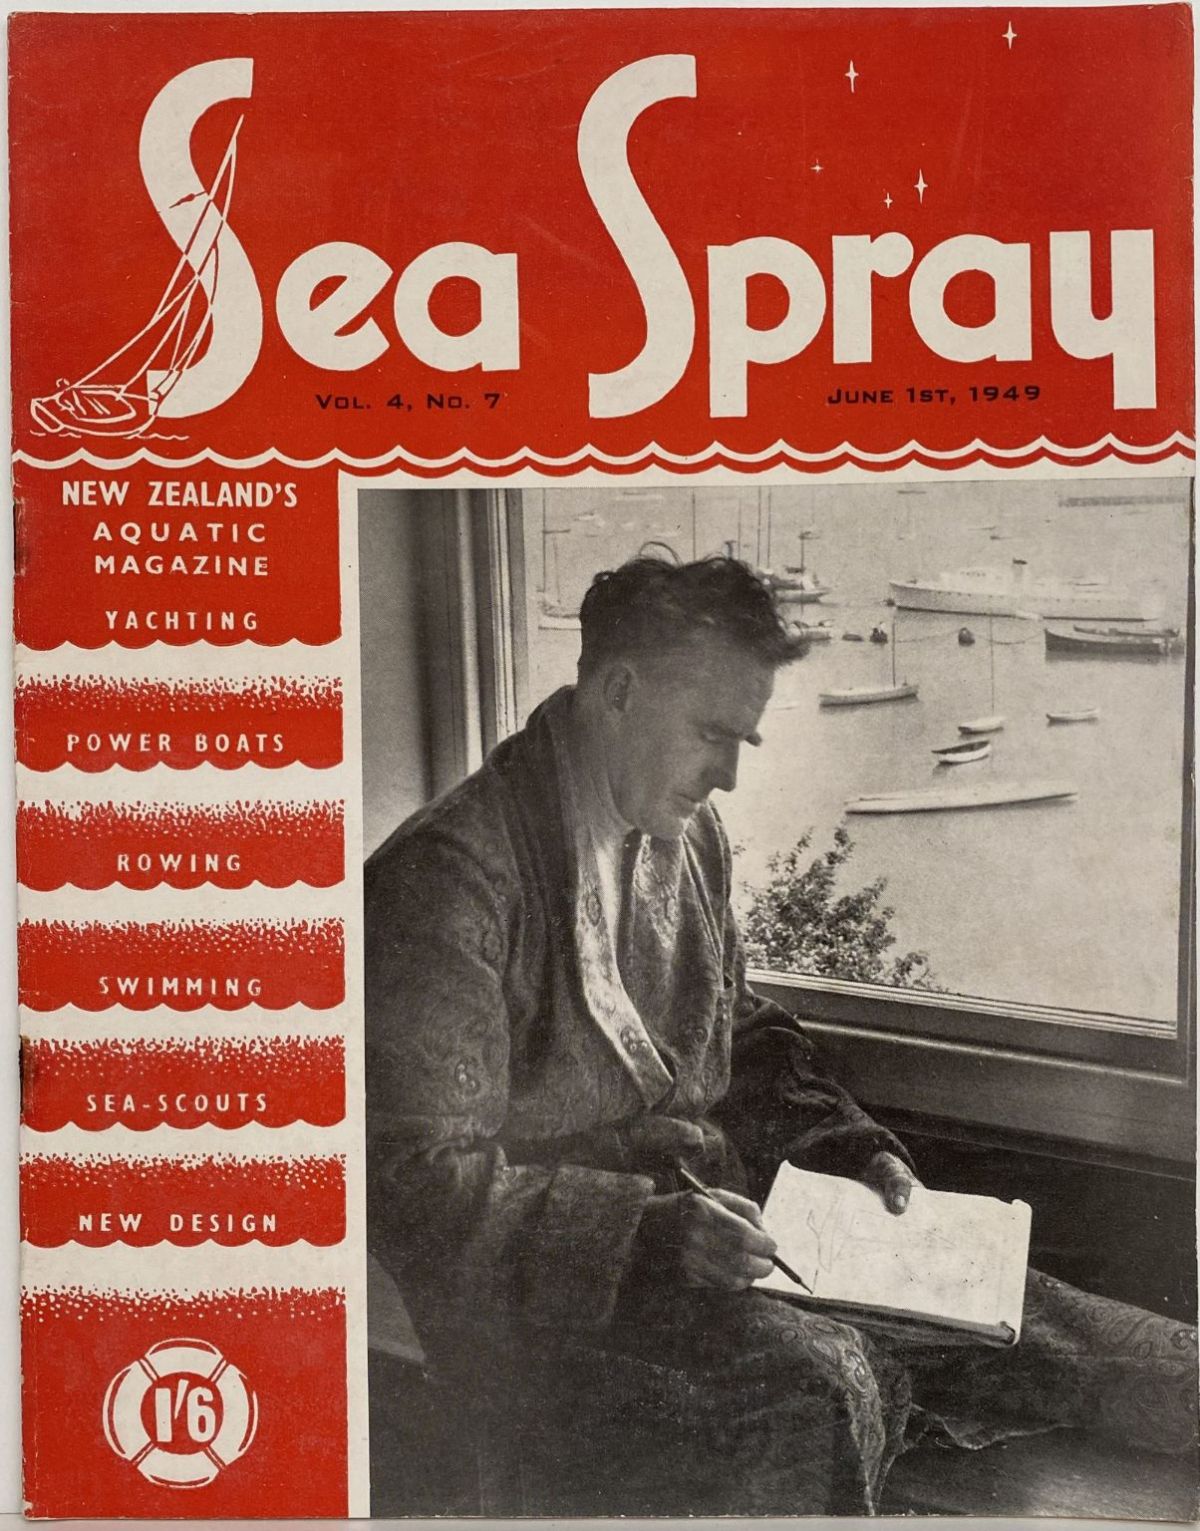 VINTAGE MAGAZINE: Sea Spray - Vol. 4, No. 7 - June 1949